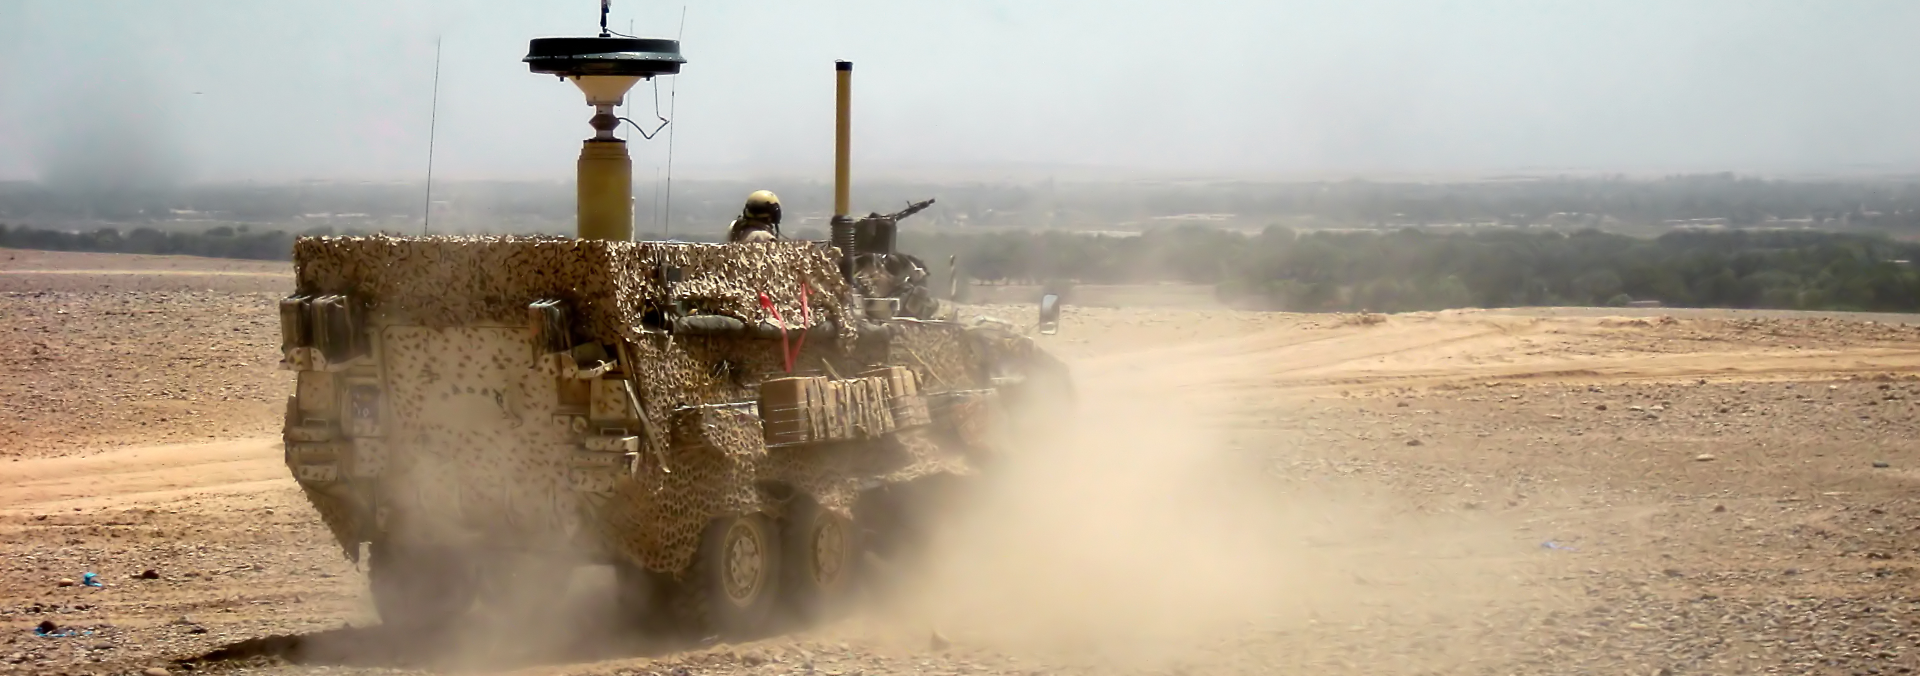 Billede af køretøj fra Electronic Warfare kompagniet indsat i Afghanistan